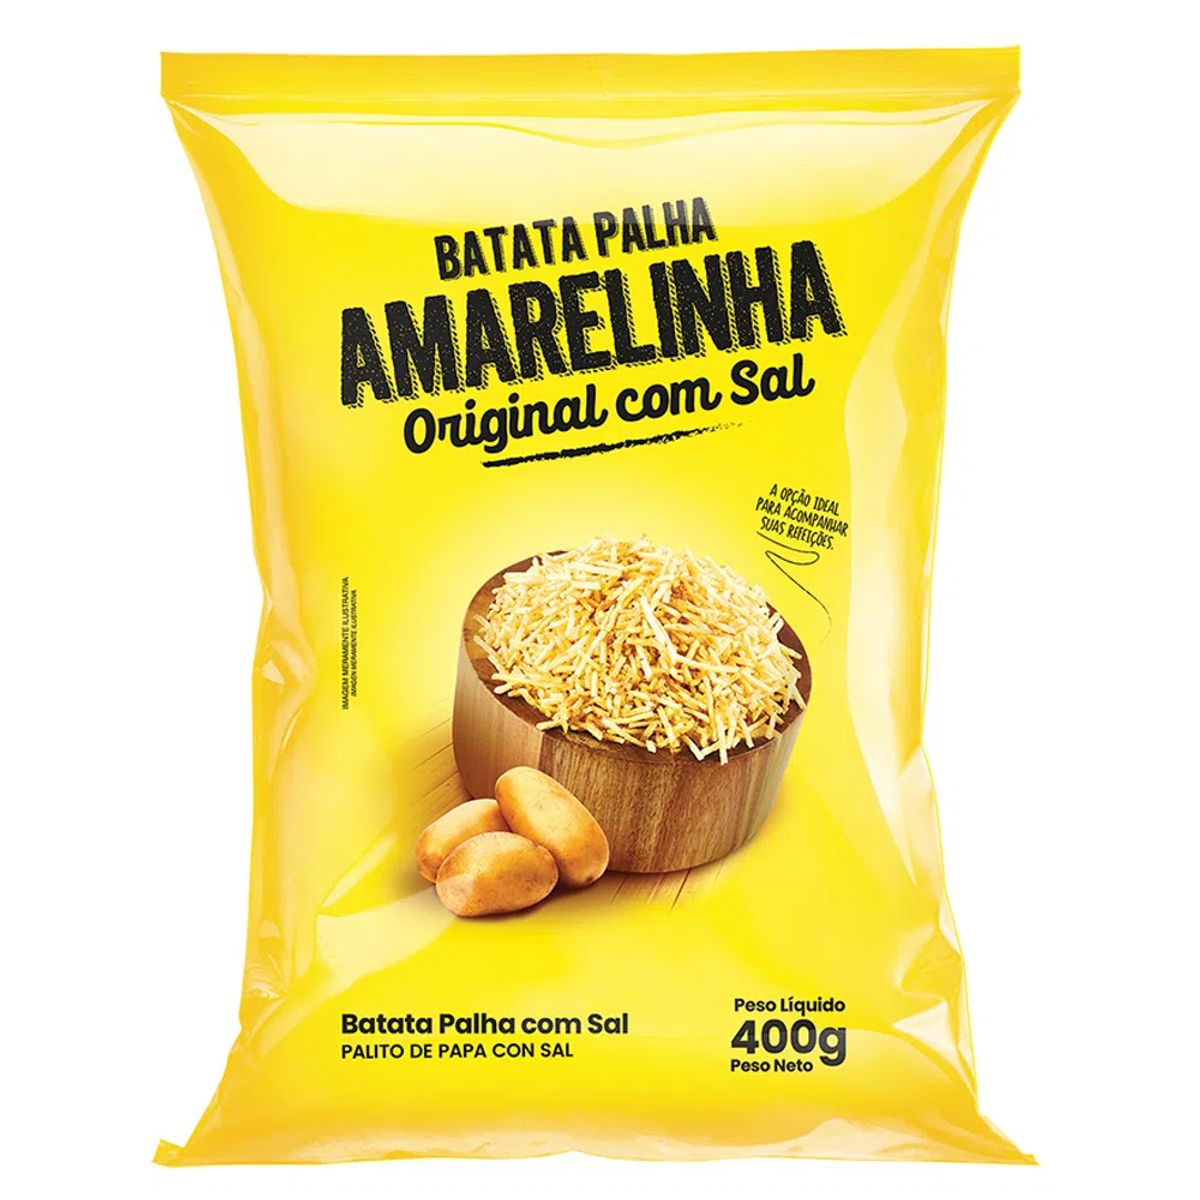 Batata Palha Amarelinha Original com Sal 400g